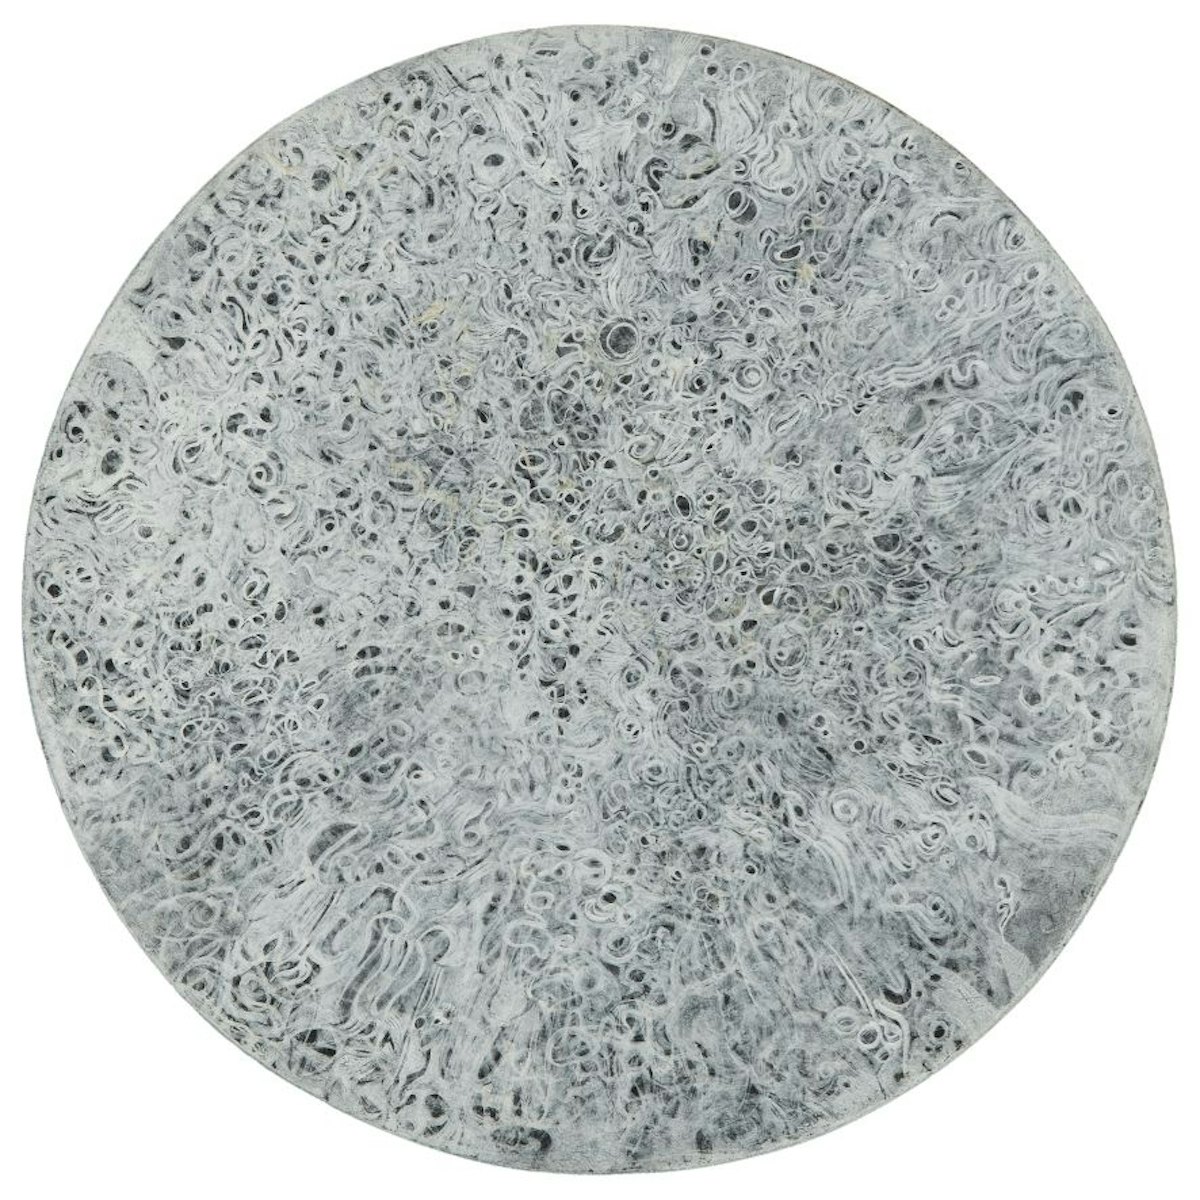 Mark Tobey
Mondo(World), 1959
Tempera su cartone
diametro 29.8 cm
Collezione privata, New York